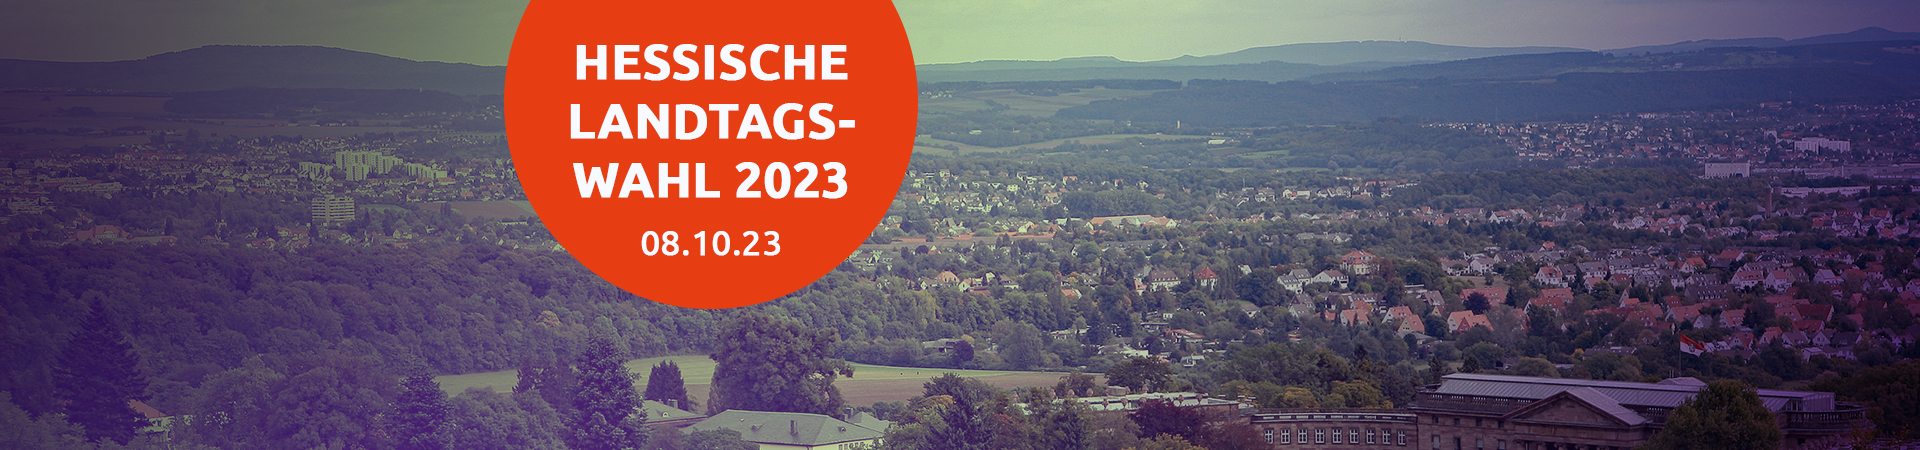 Bild einer hessischen Landschaft mit Titel &quot;Landtagswahl 2023&quot;